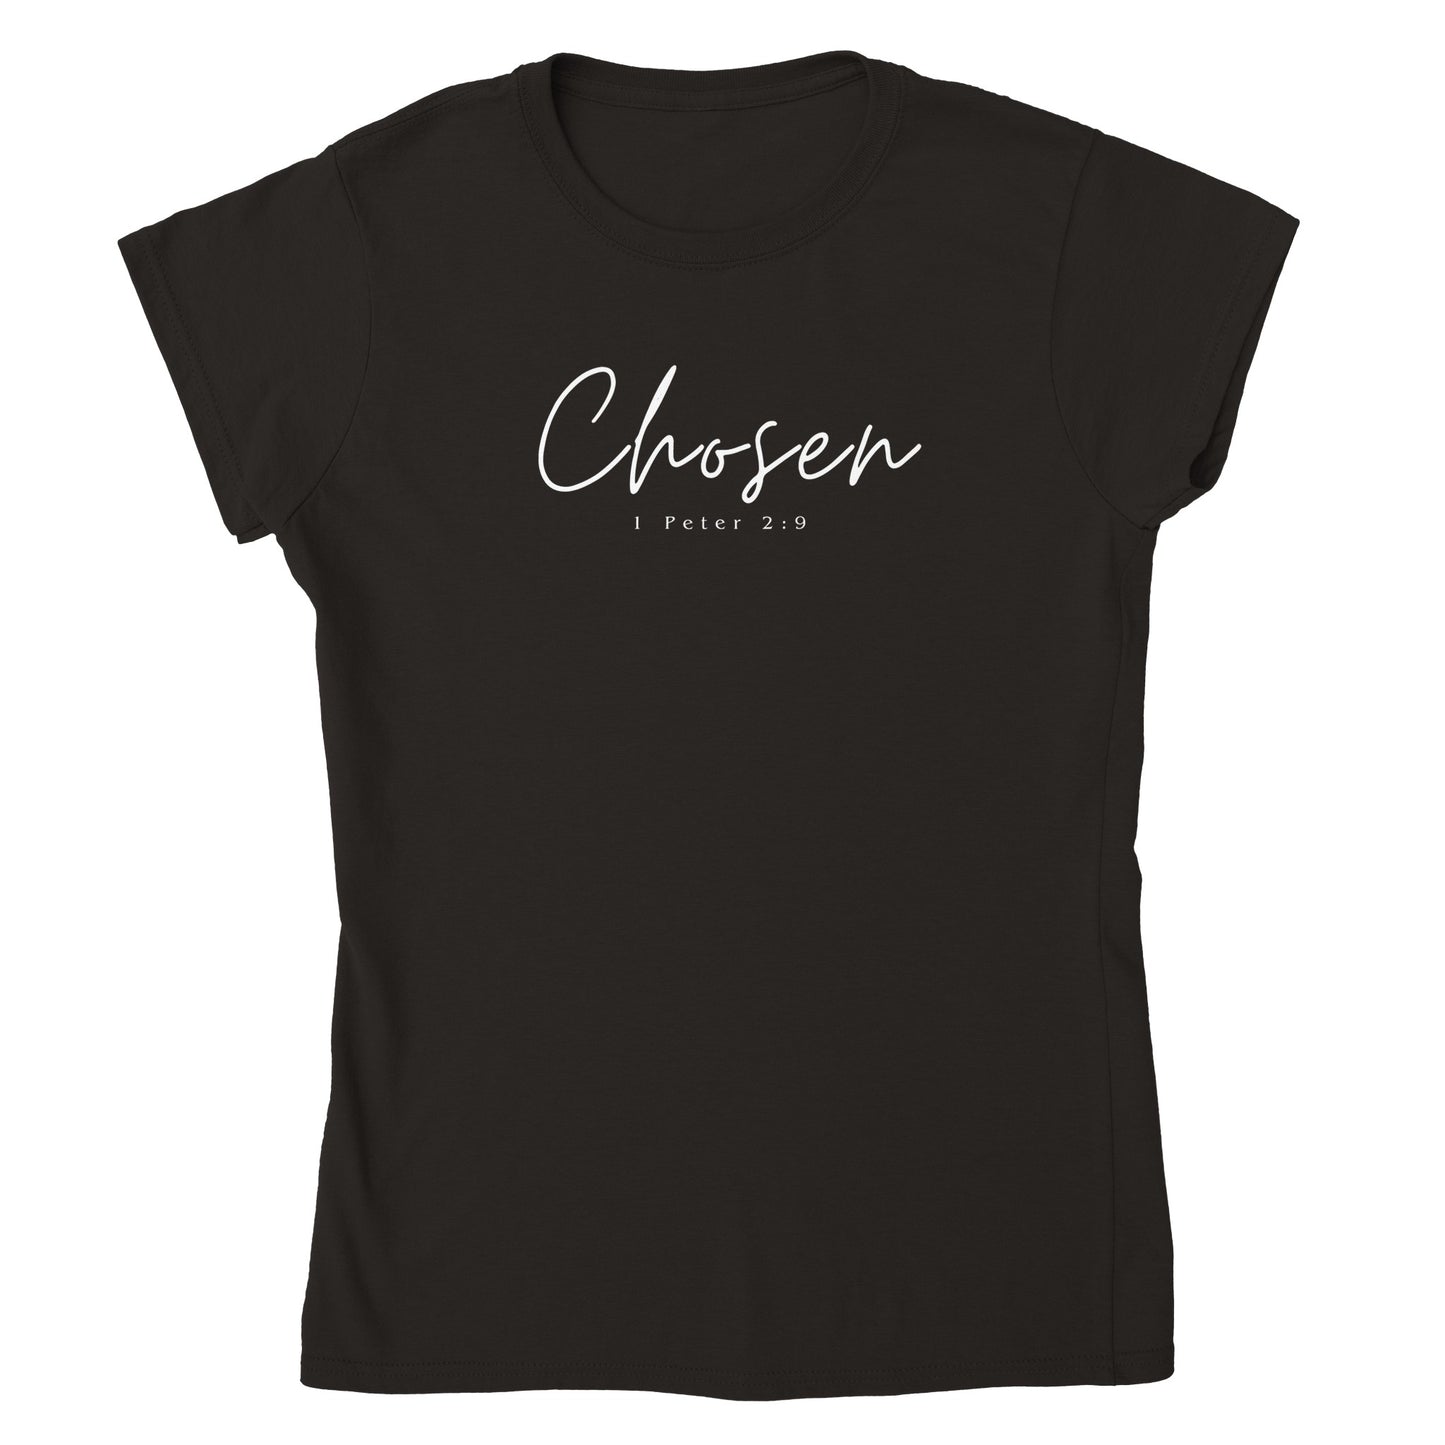 Chosen Women’s T-Shirt